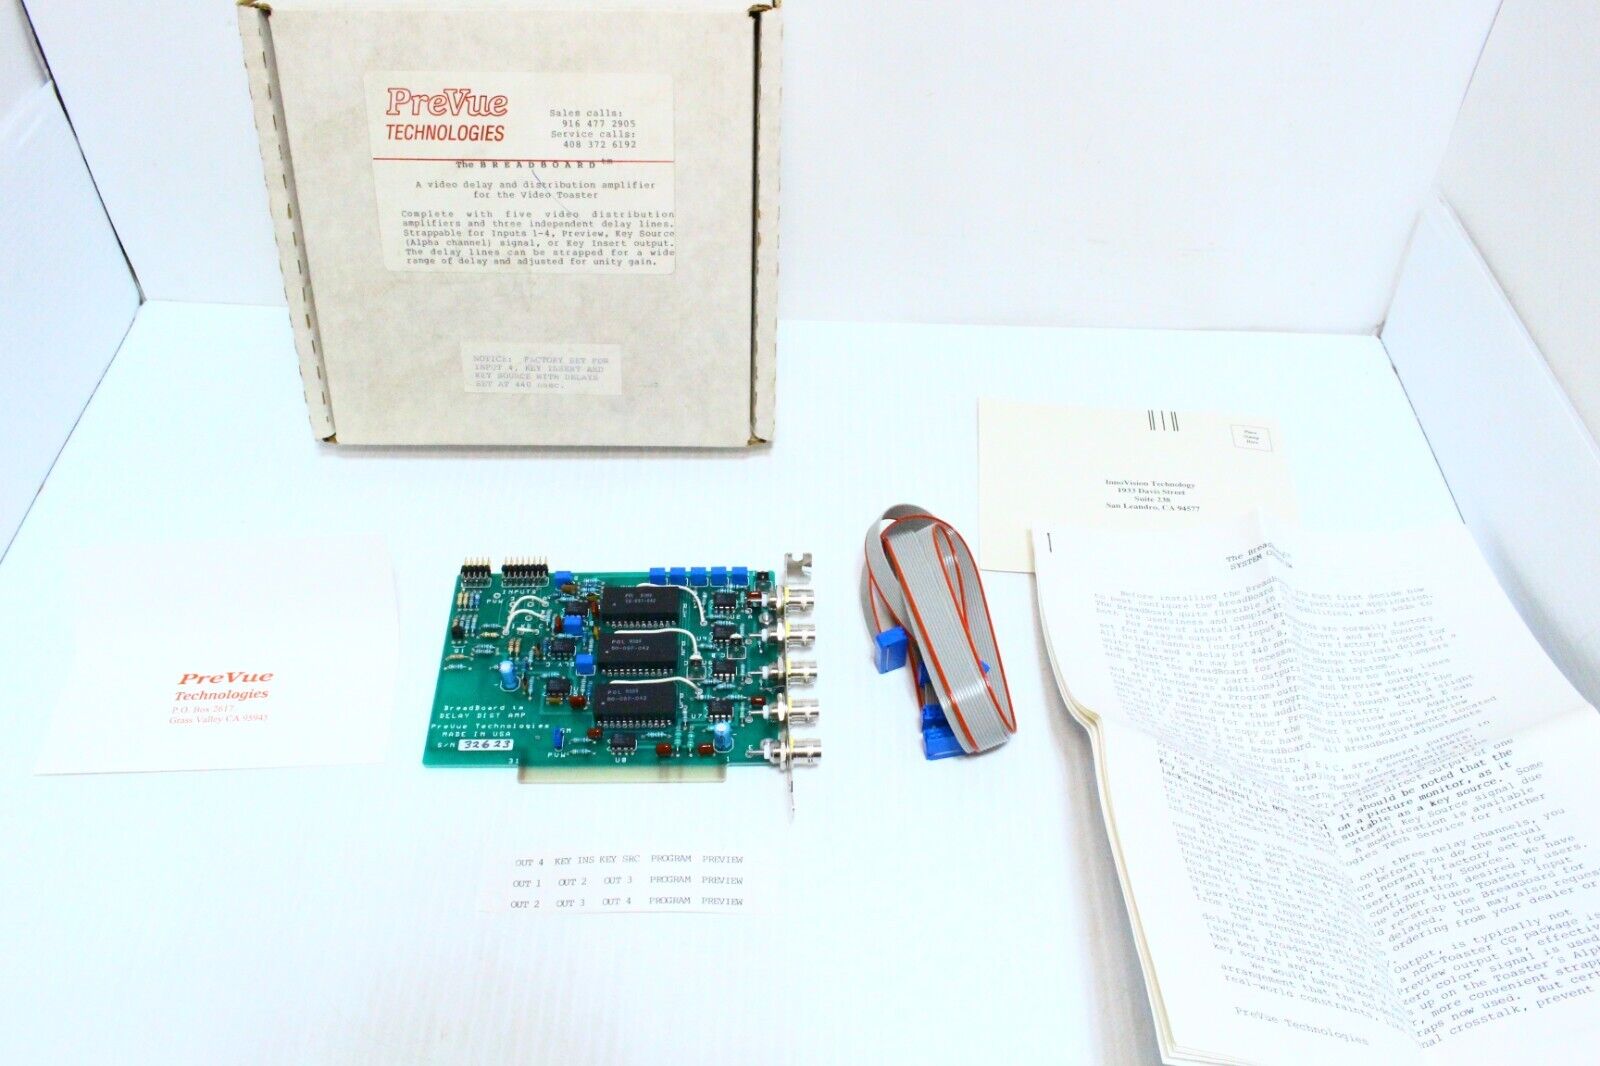 Commodore Amiga 2000 3000 PreVue Technologies THE BREADBOARD for Video Toaster